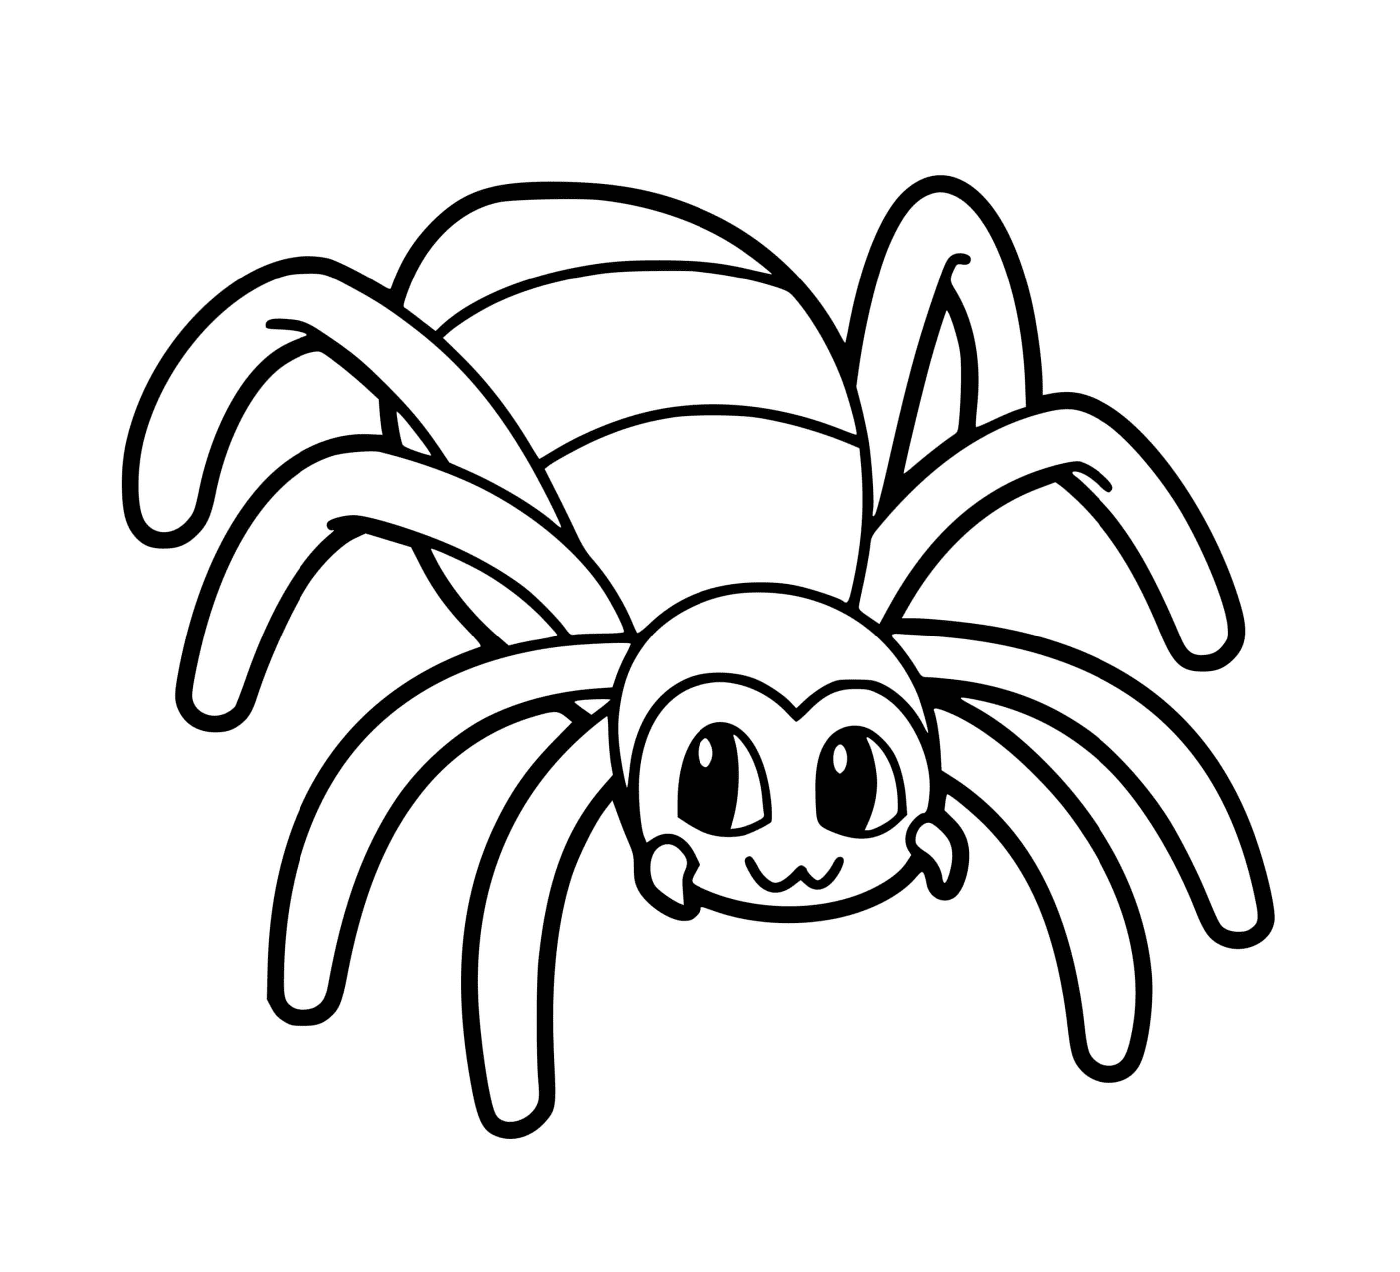  Un ragno 